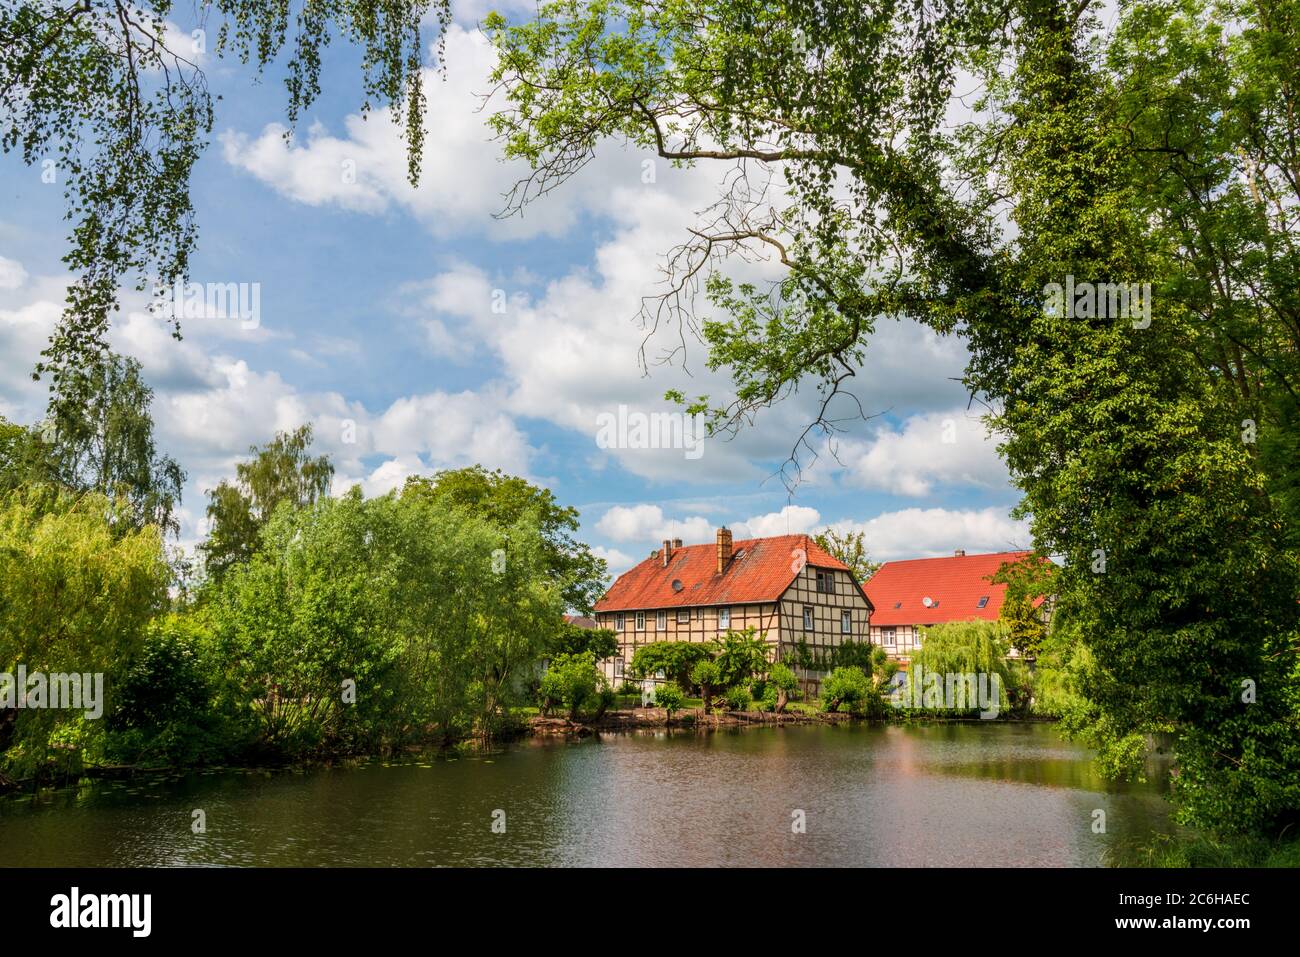 Salzwedel eine Kleinstadt in Sachsen-Anhalt, bekannt durch ihren Baumkuchen und die Fachwerk Architektur Stock Photo